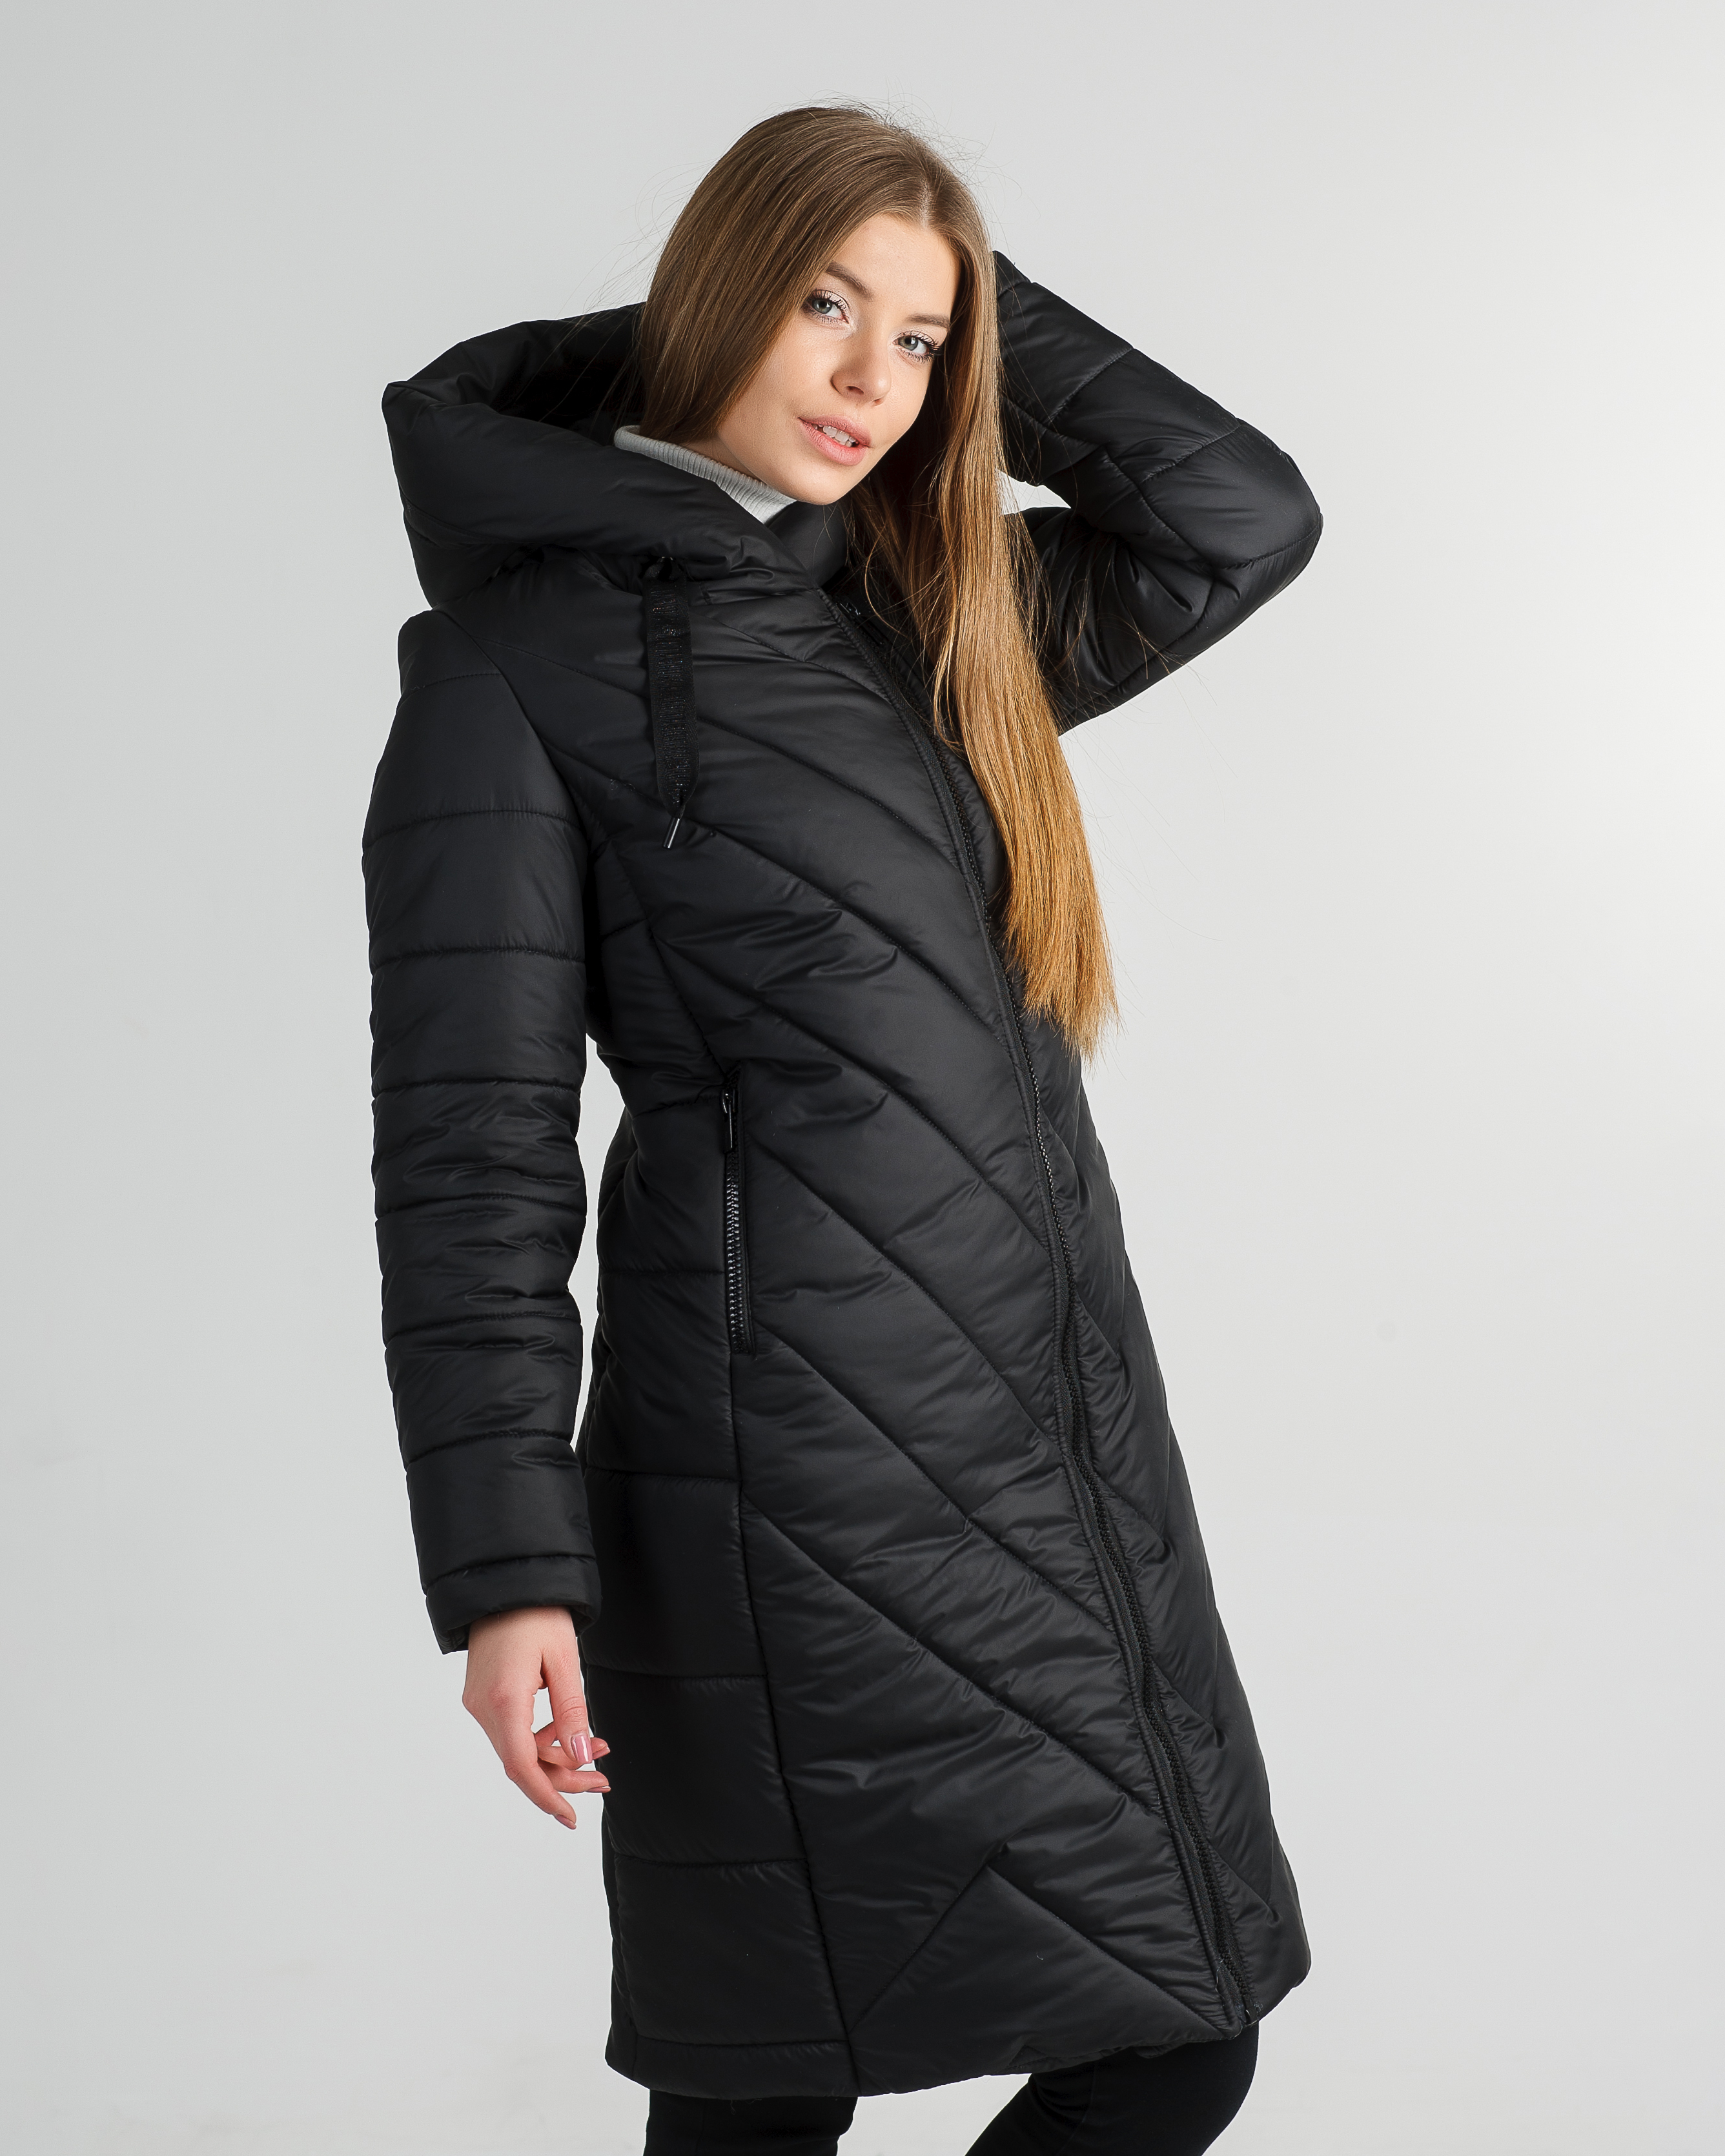 Женские зимние куртки по лучшим ценам